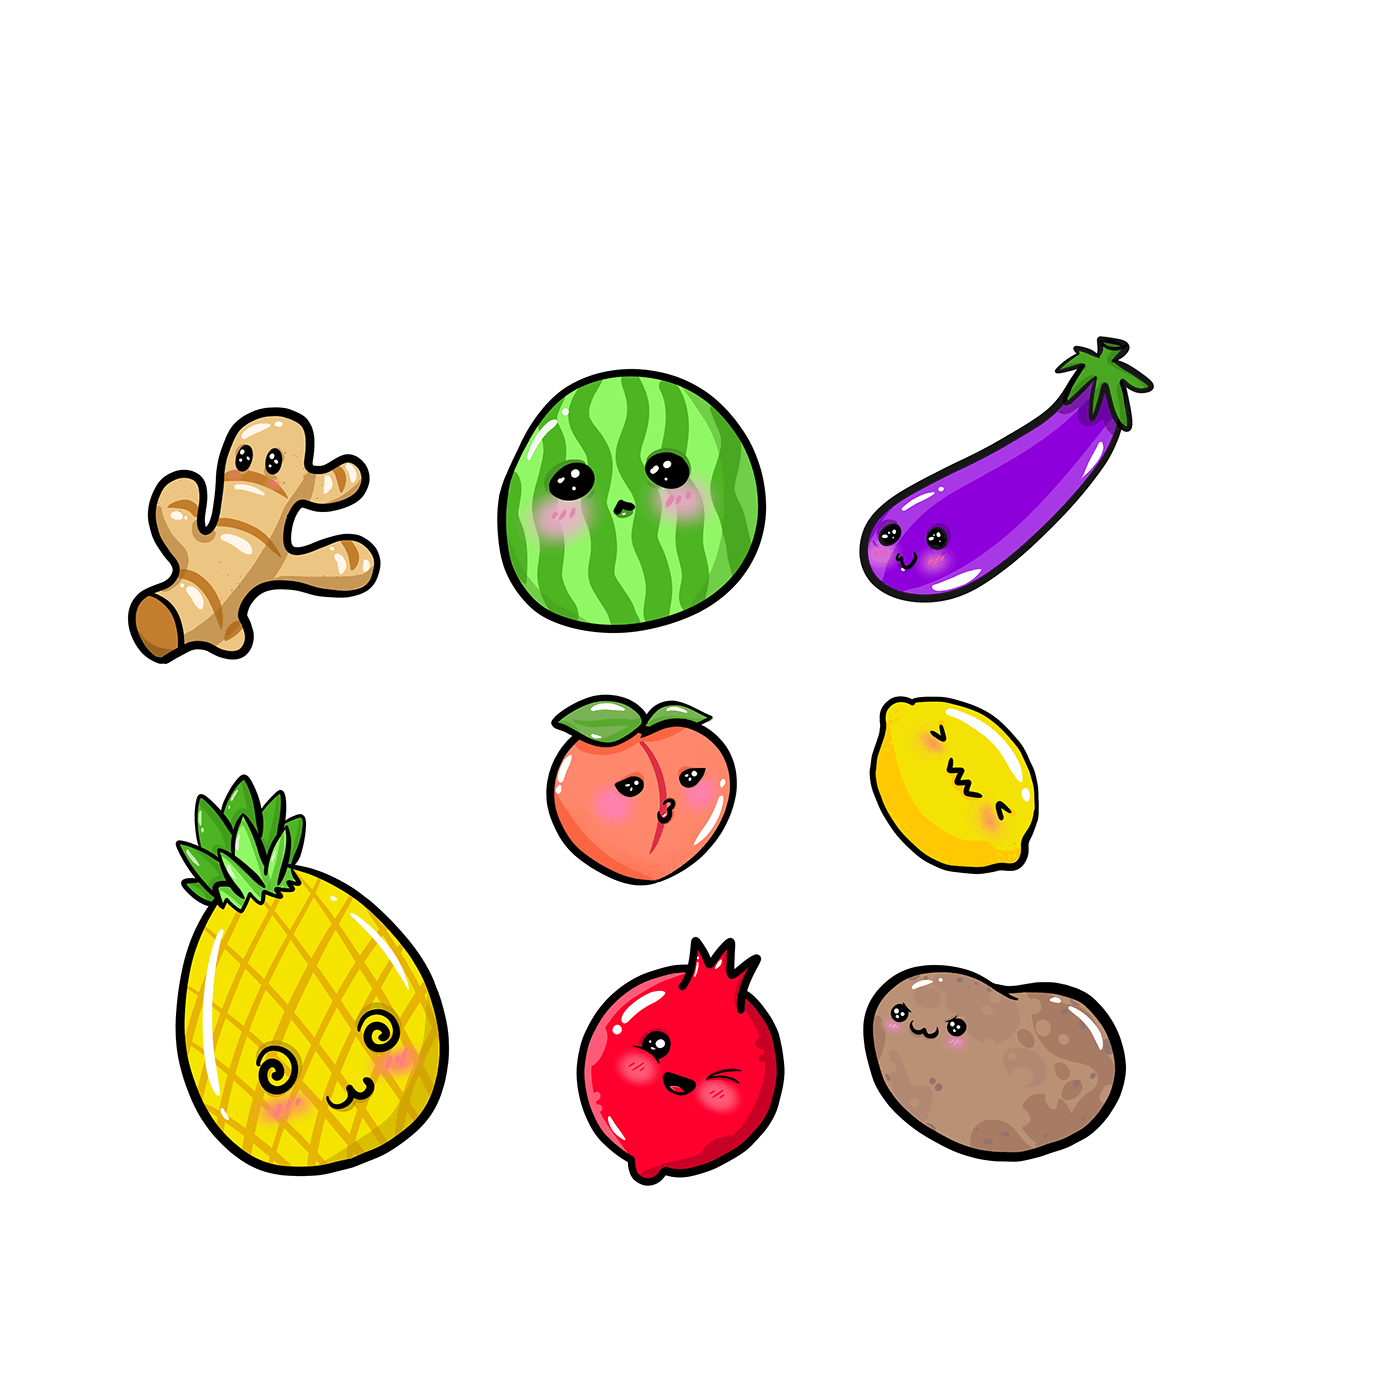 clipstudiopaint clipstudioart fruits vegetables ILLUSTRATION  DIGITALDRAWING